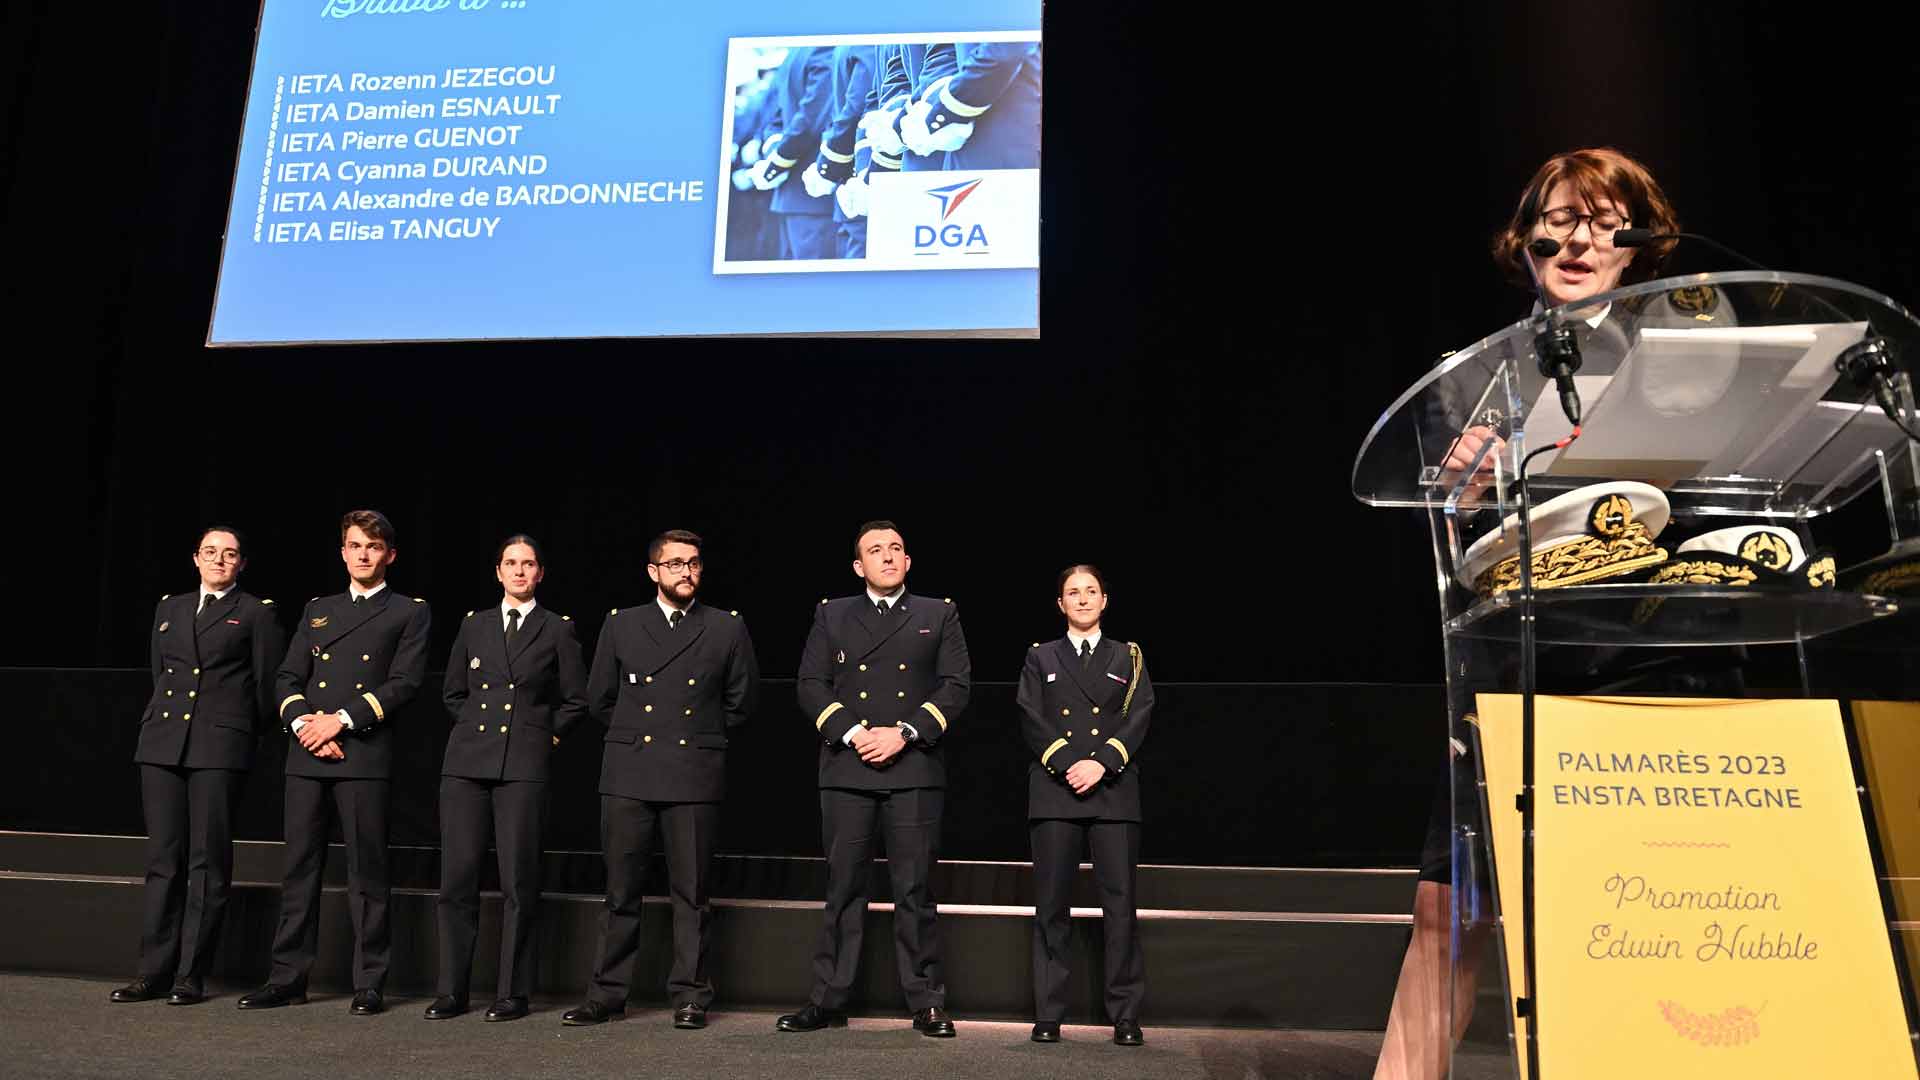 ENSTA Bretagne : Remise du prix DGA lors de la cérémonie de remise des diplômes 2023